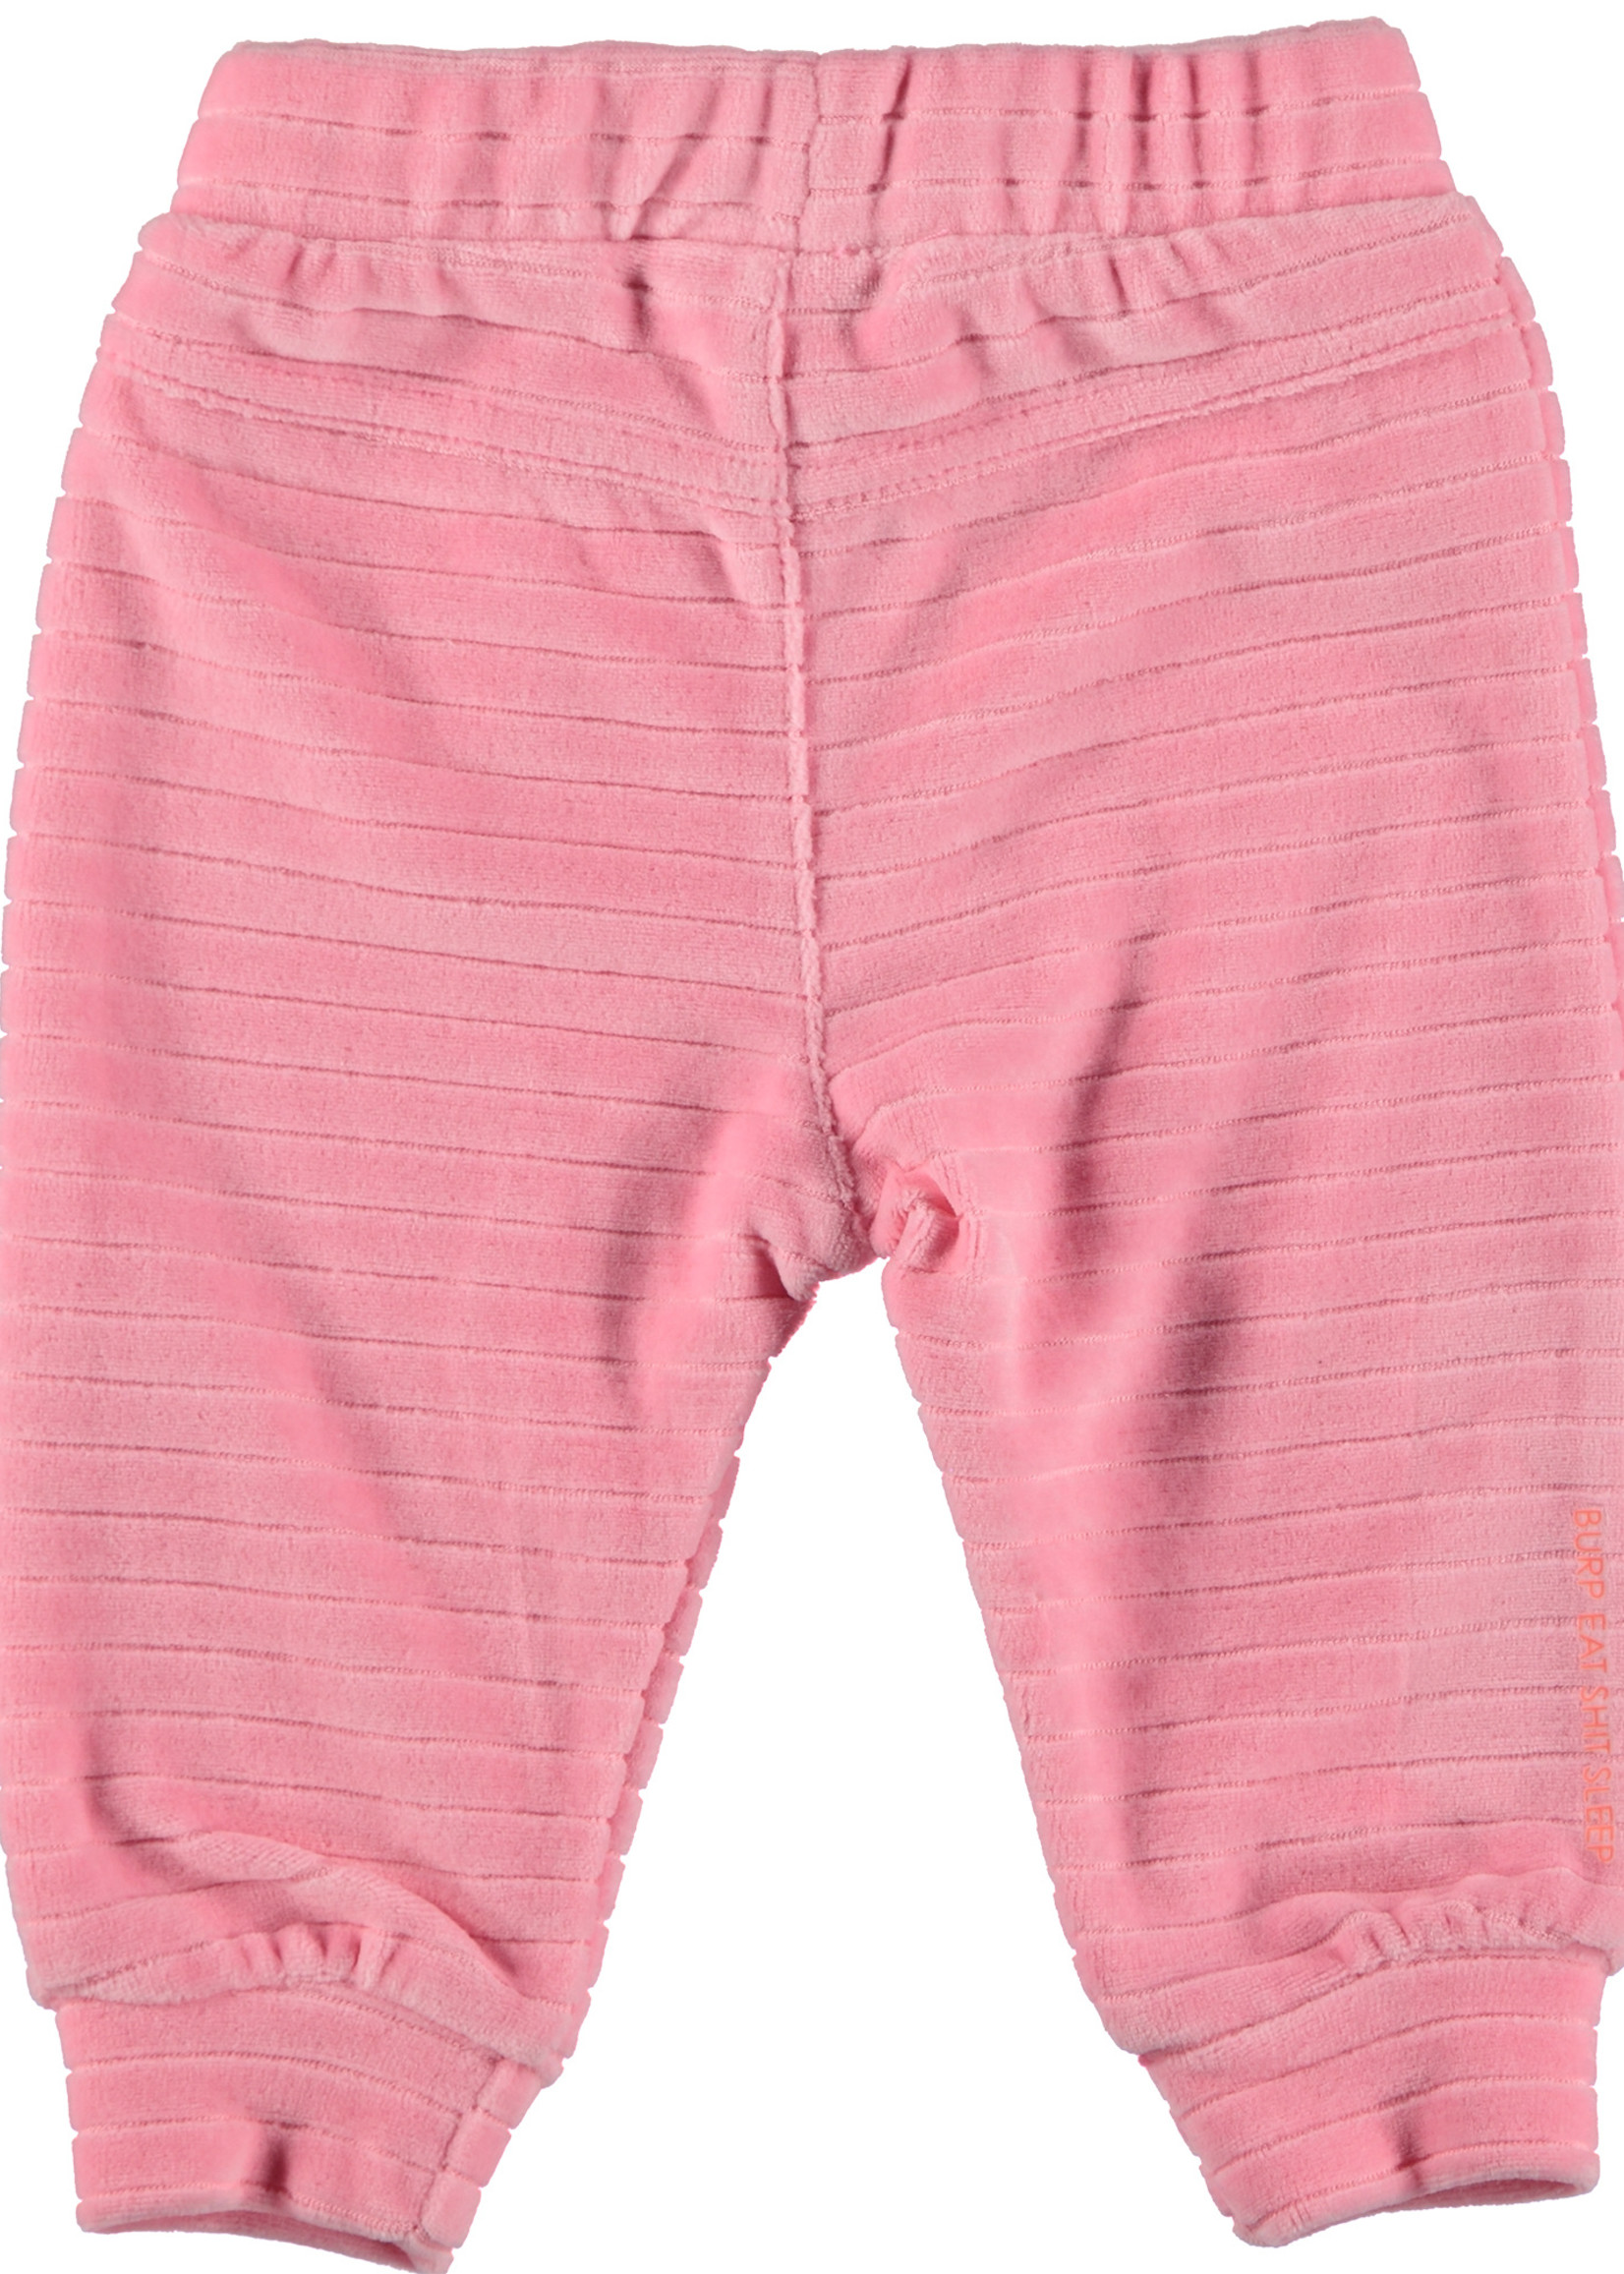 B.E.S.S. Pants Velvet Striped, Pink